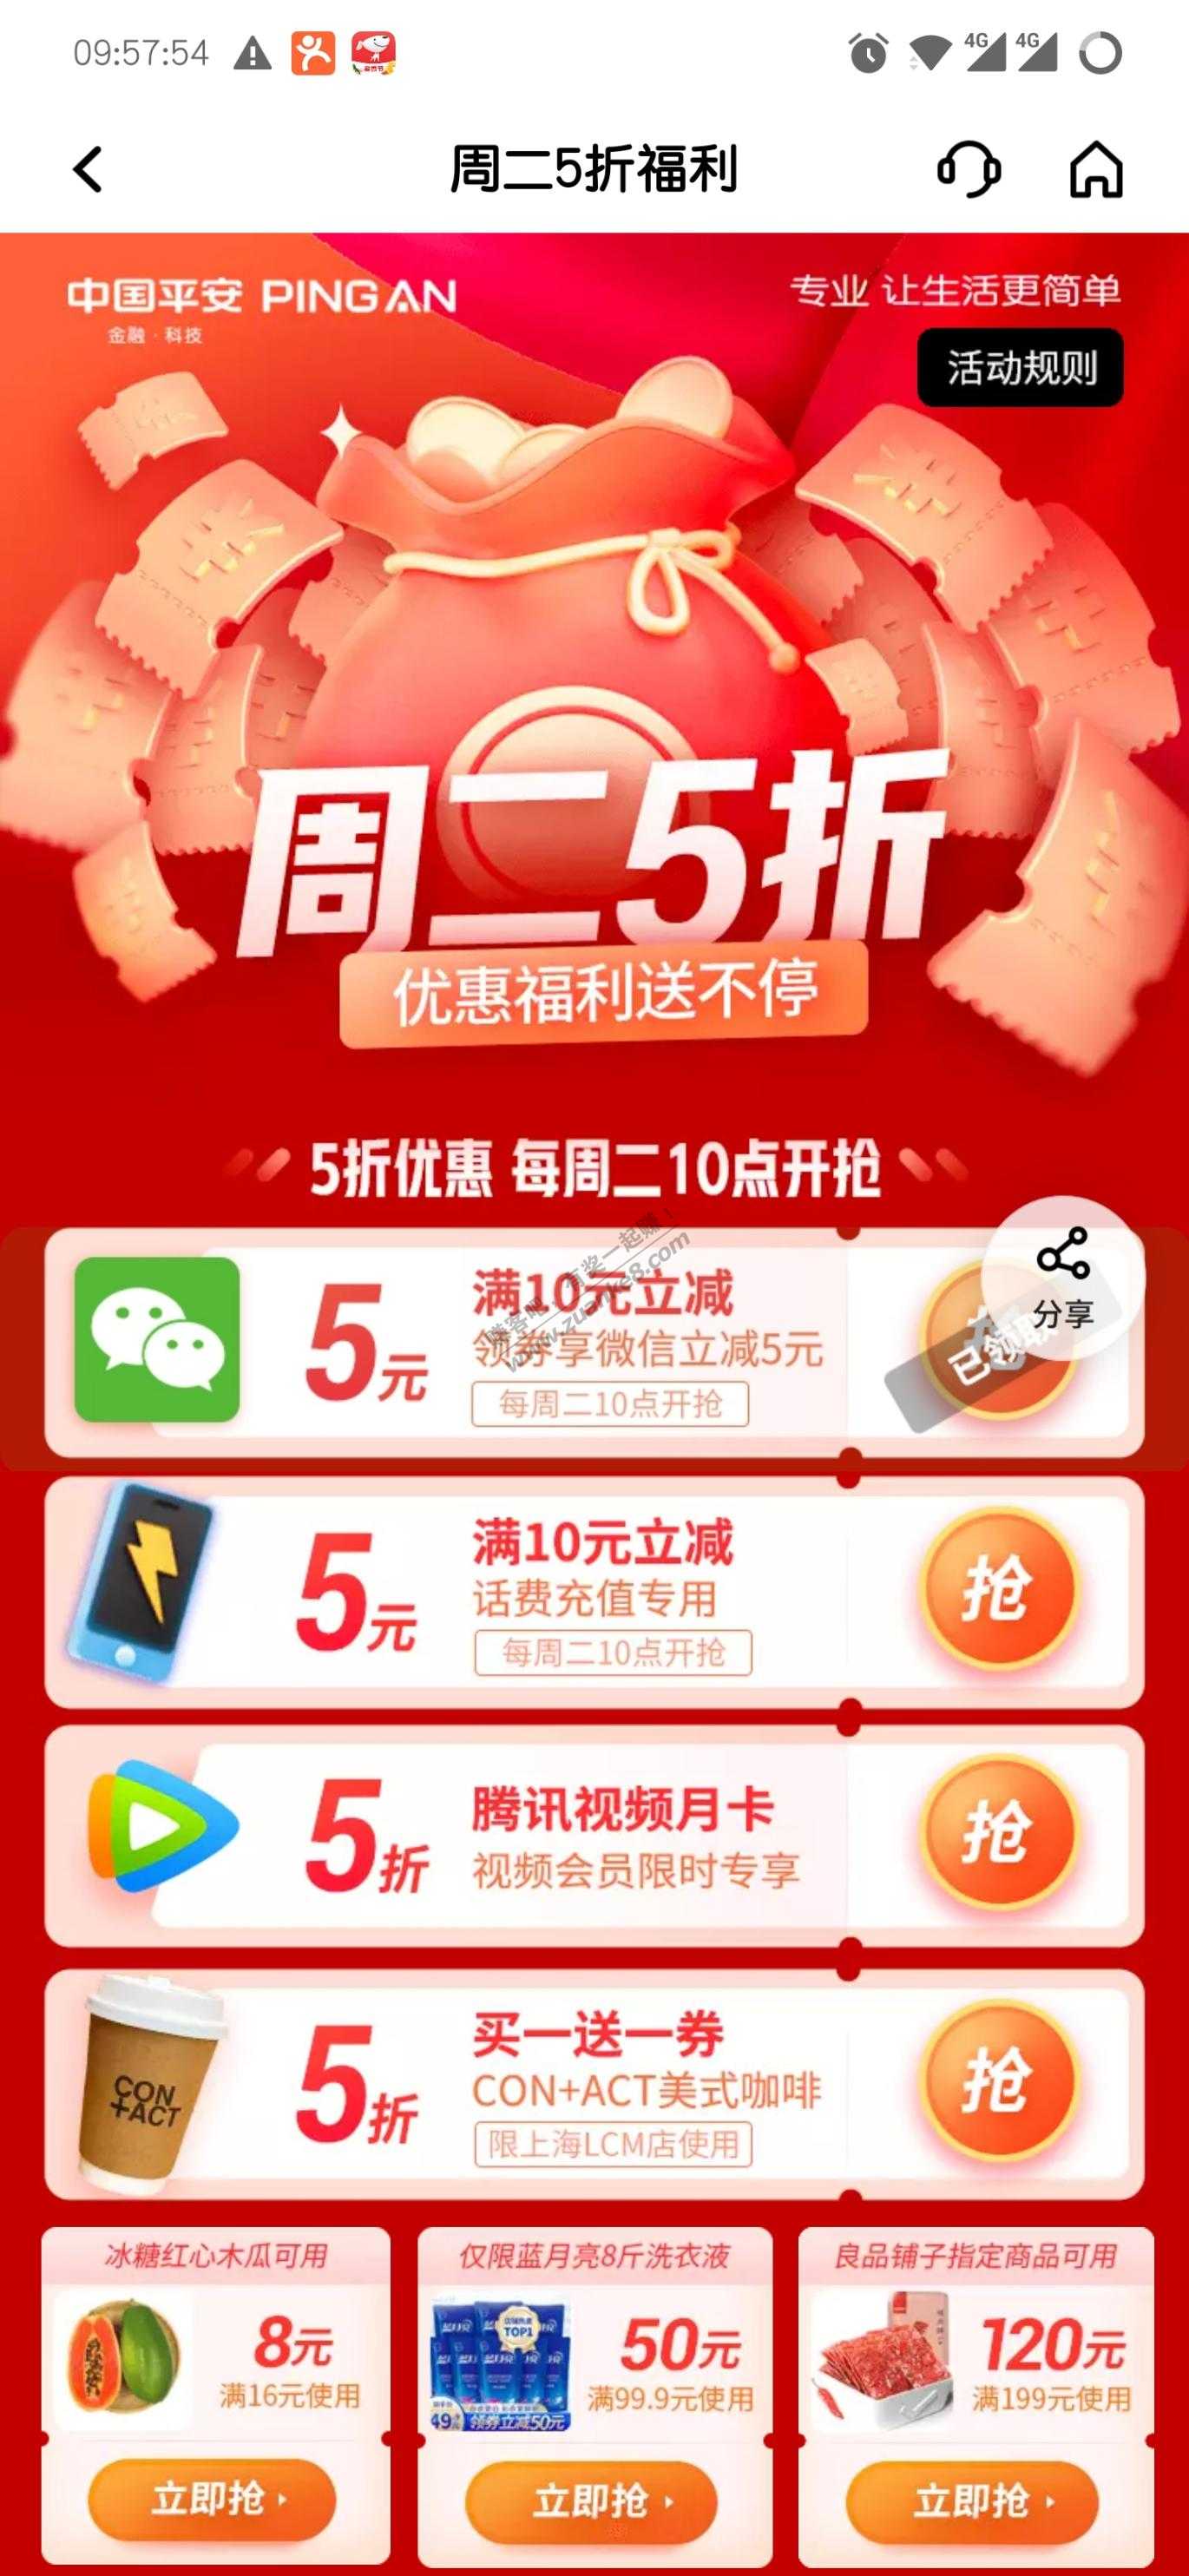 平安app 话费 V.x 10-5-惠小助(52huixz.com)